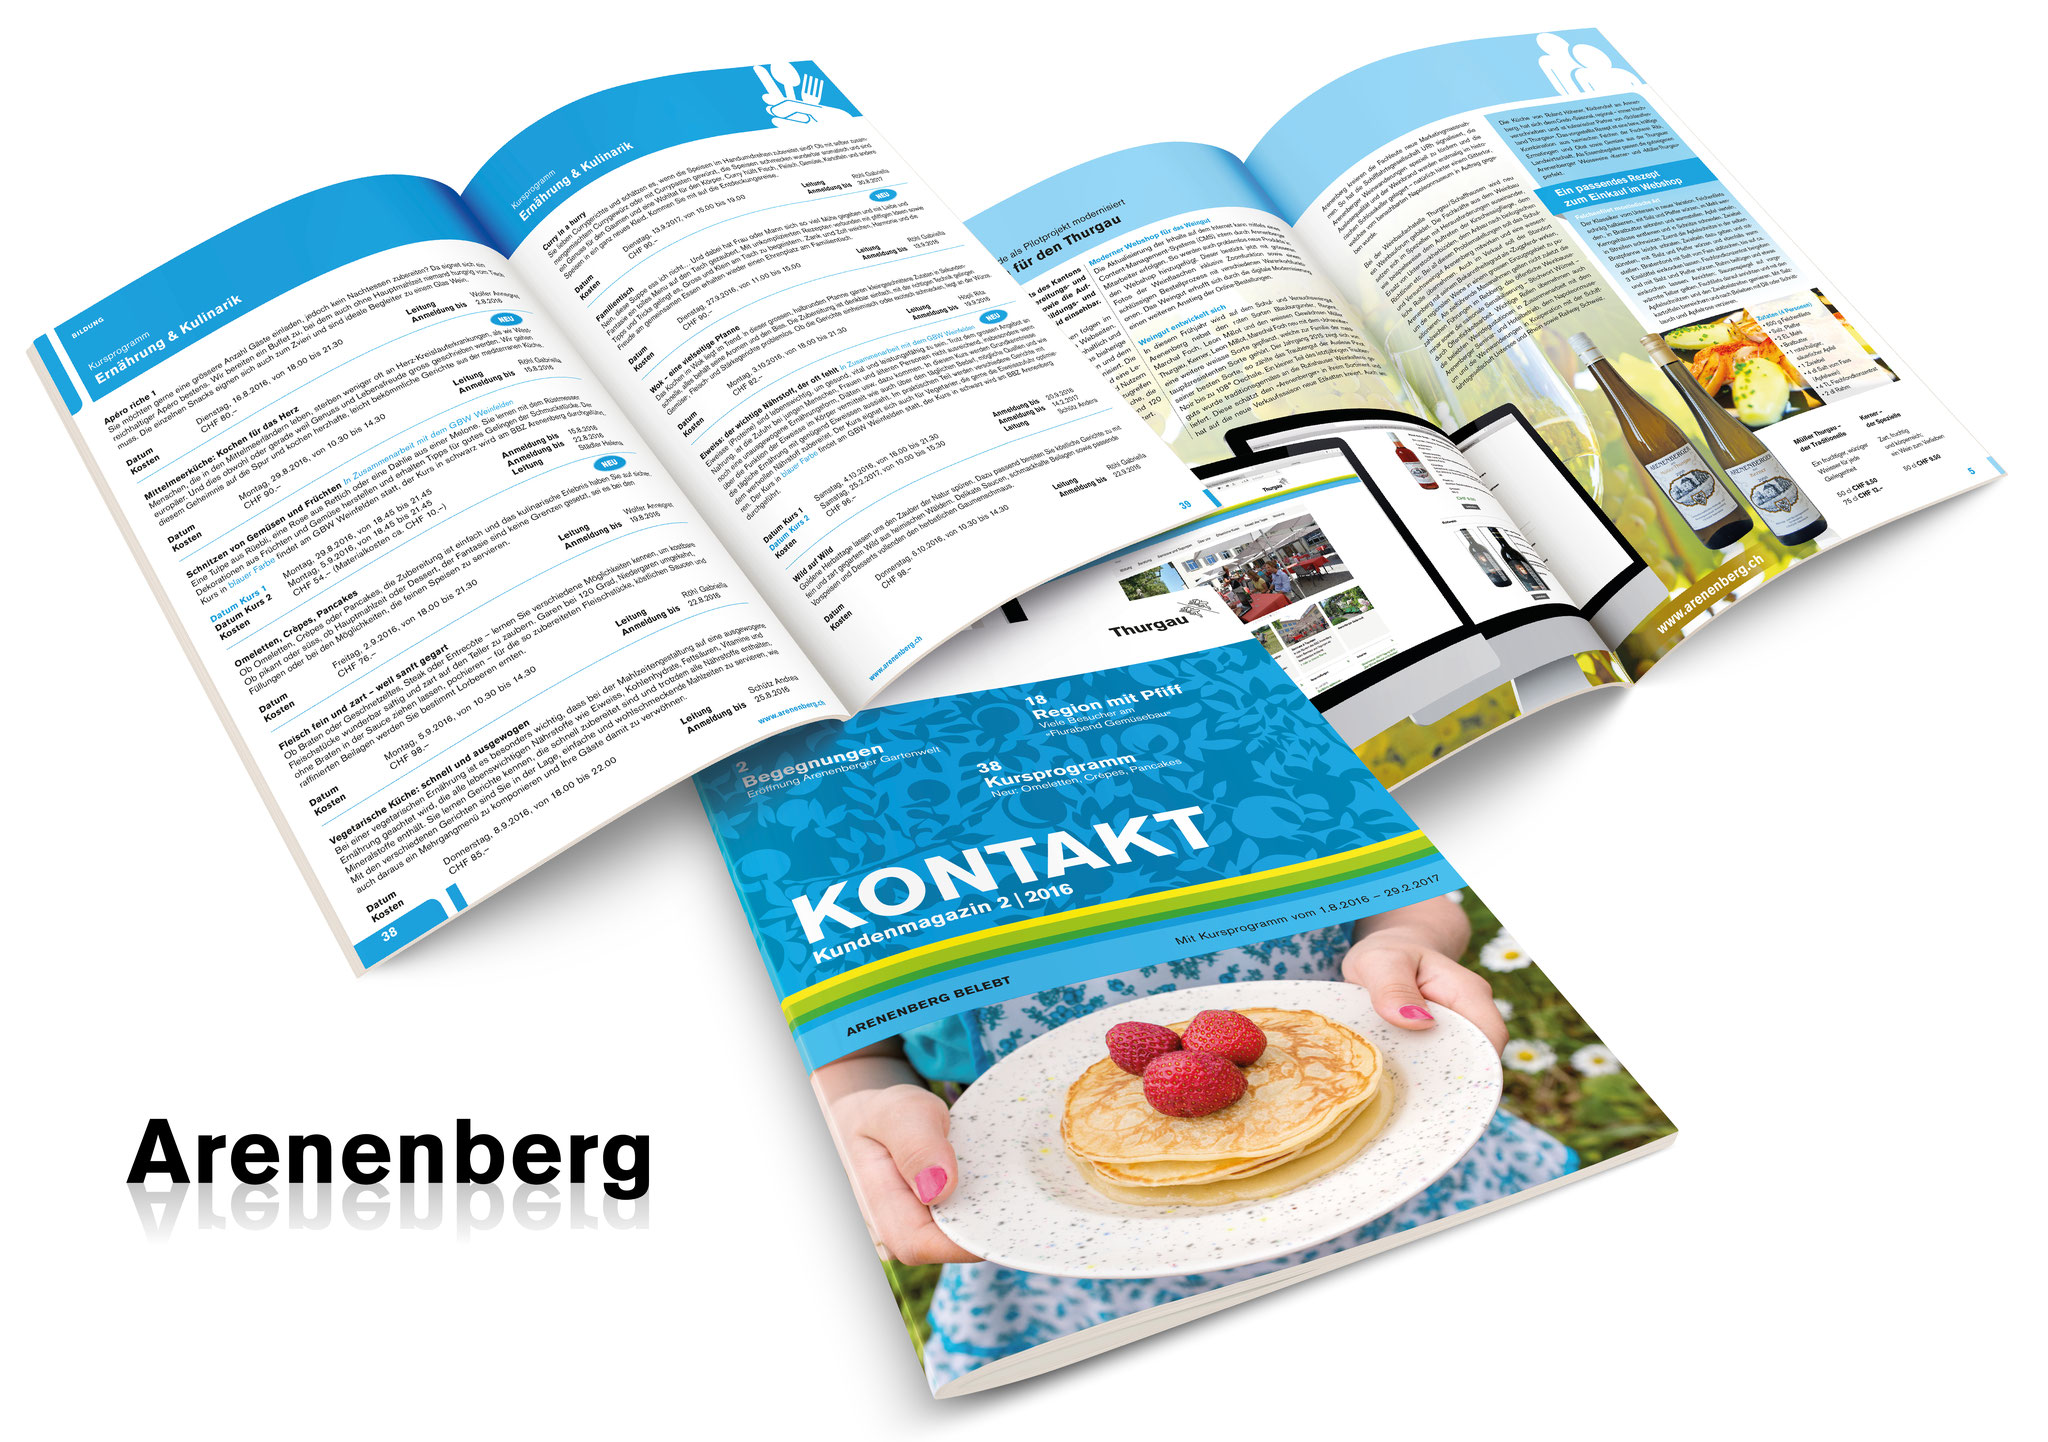 Das Bildungs- und Beratungszentrum Arenenberg professionalisiert seinen Auftritt, seine Tourismus-Angebote und die gesamte Marketing-Kommunikation mit insieme.